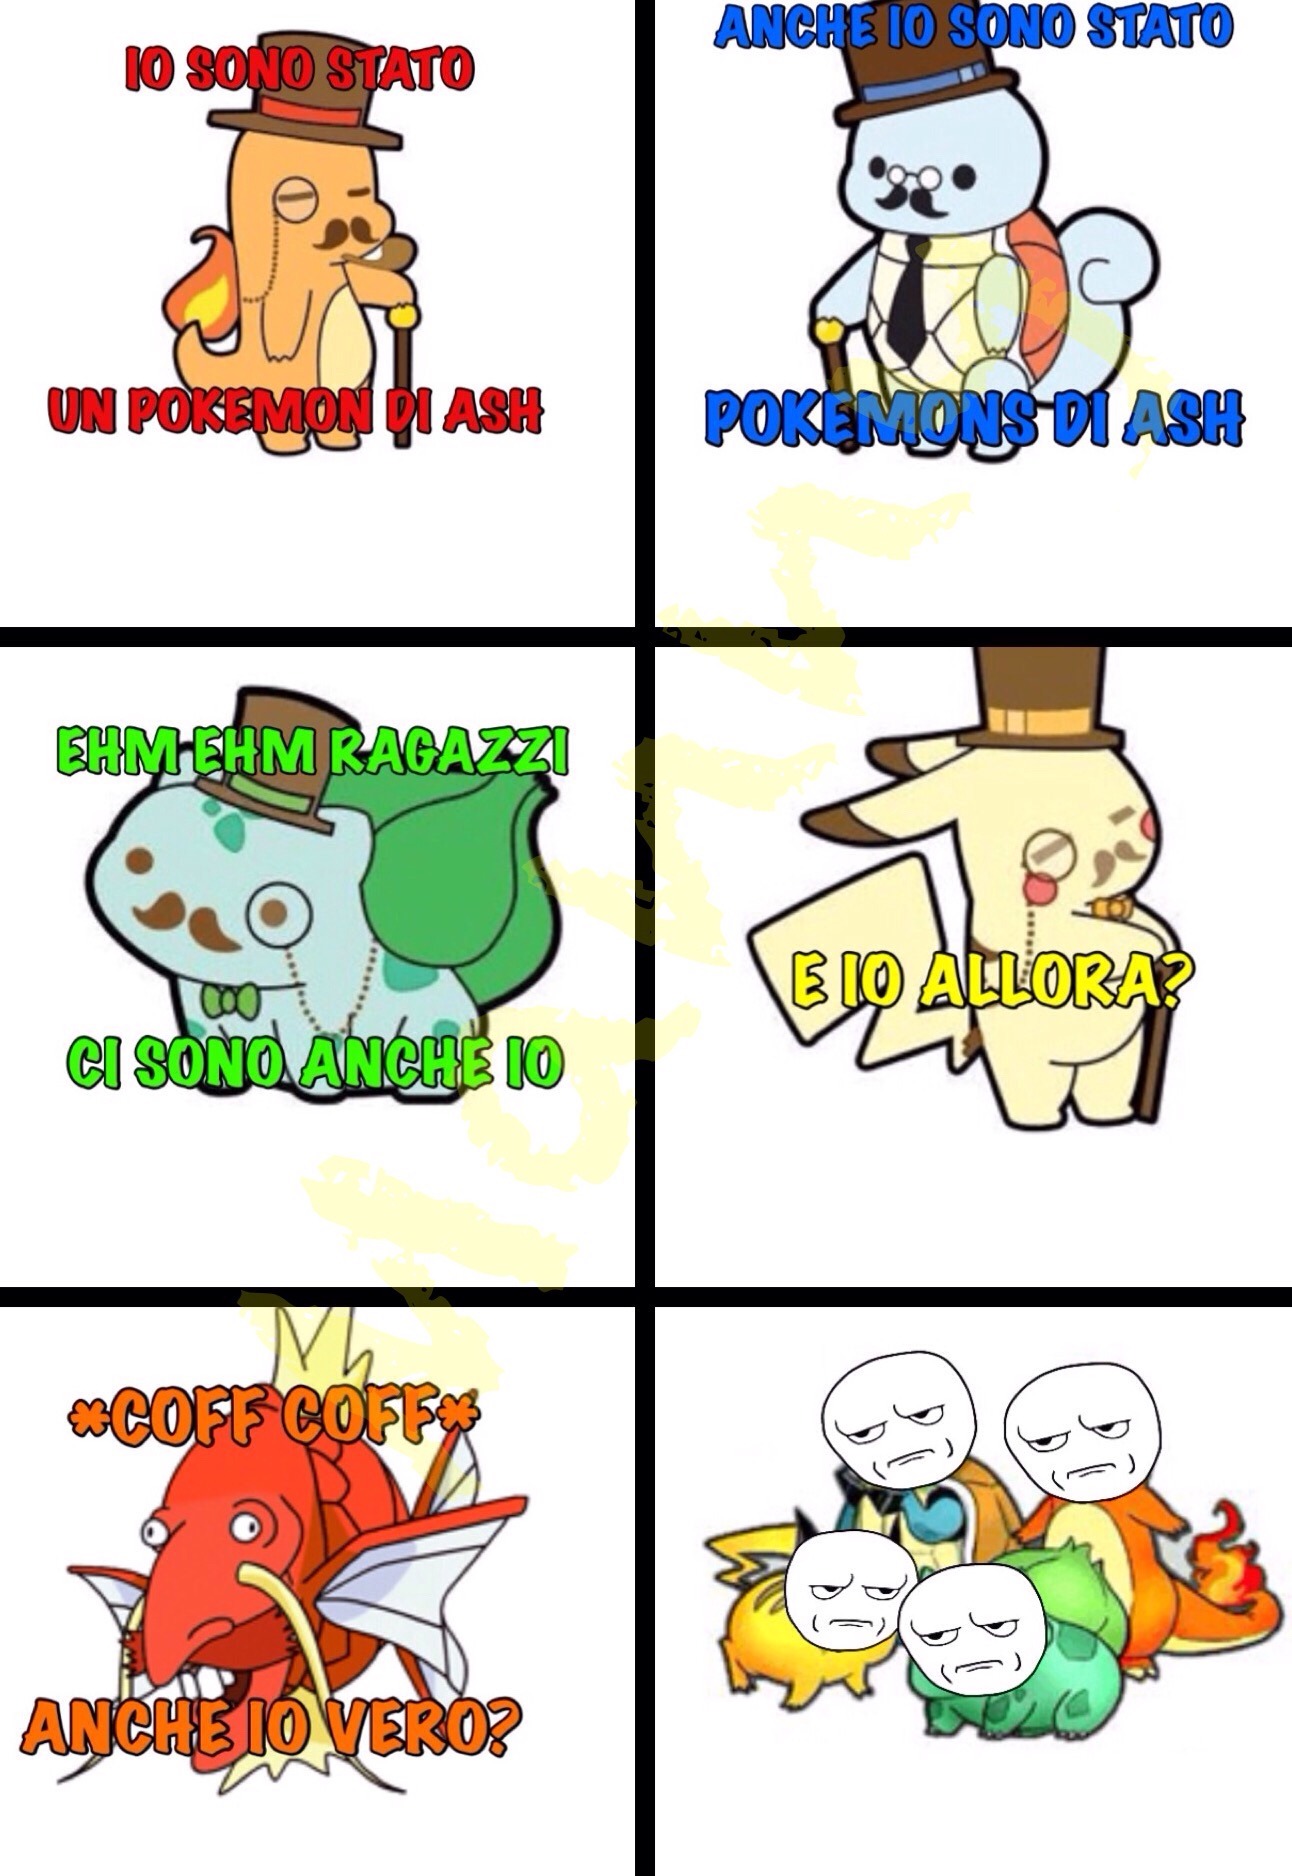 Ri-cito djpepito ^ #1 meme sui pokemon (ne verranno altri se questo piacerà)